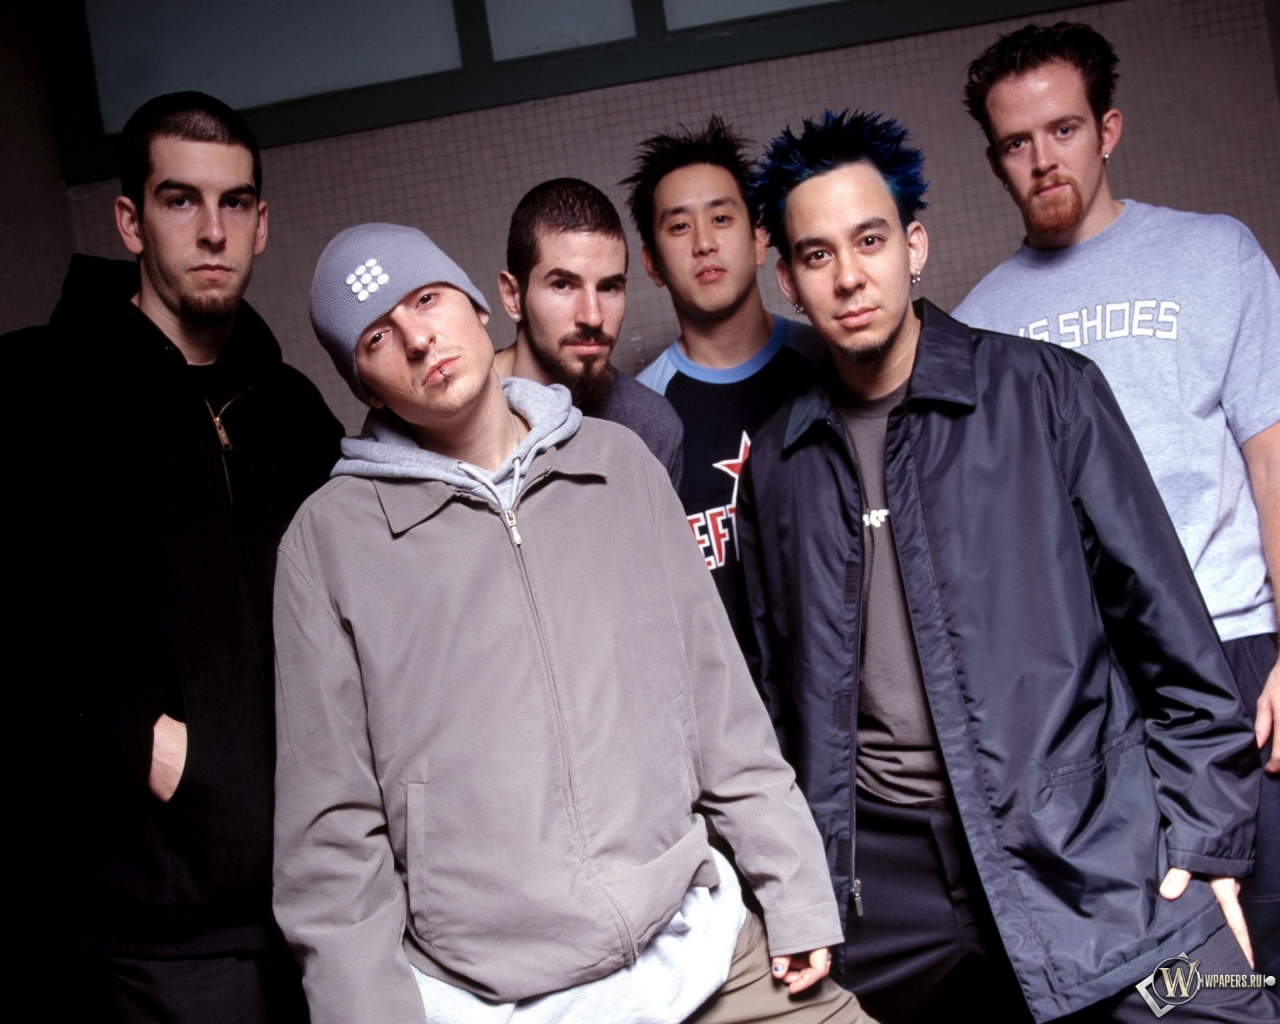 Linkin Park 1280x1024